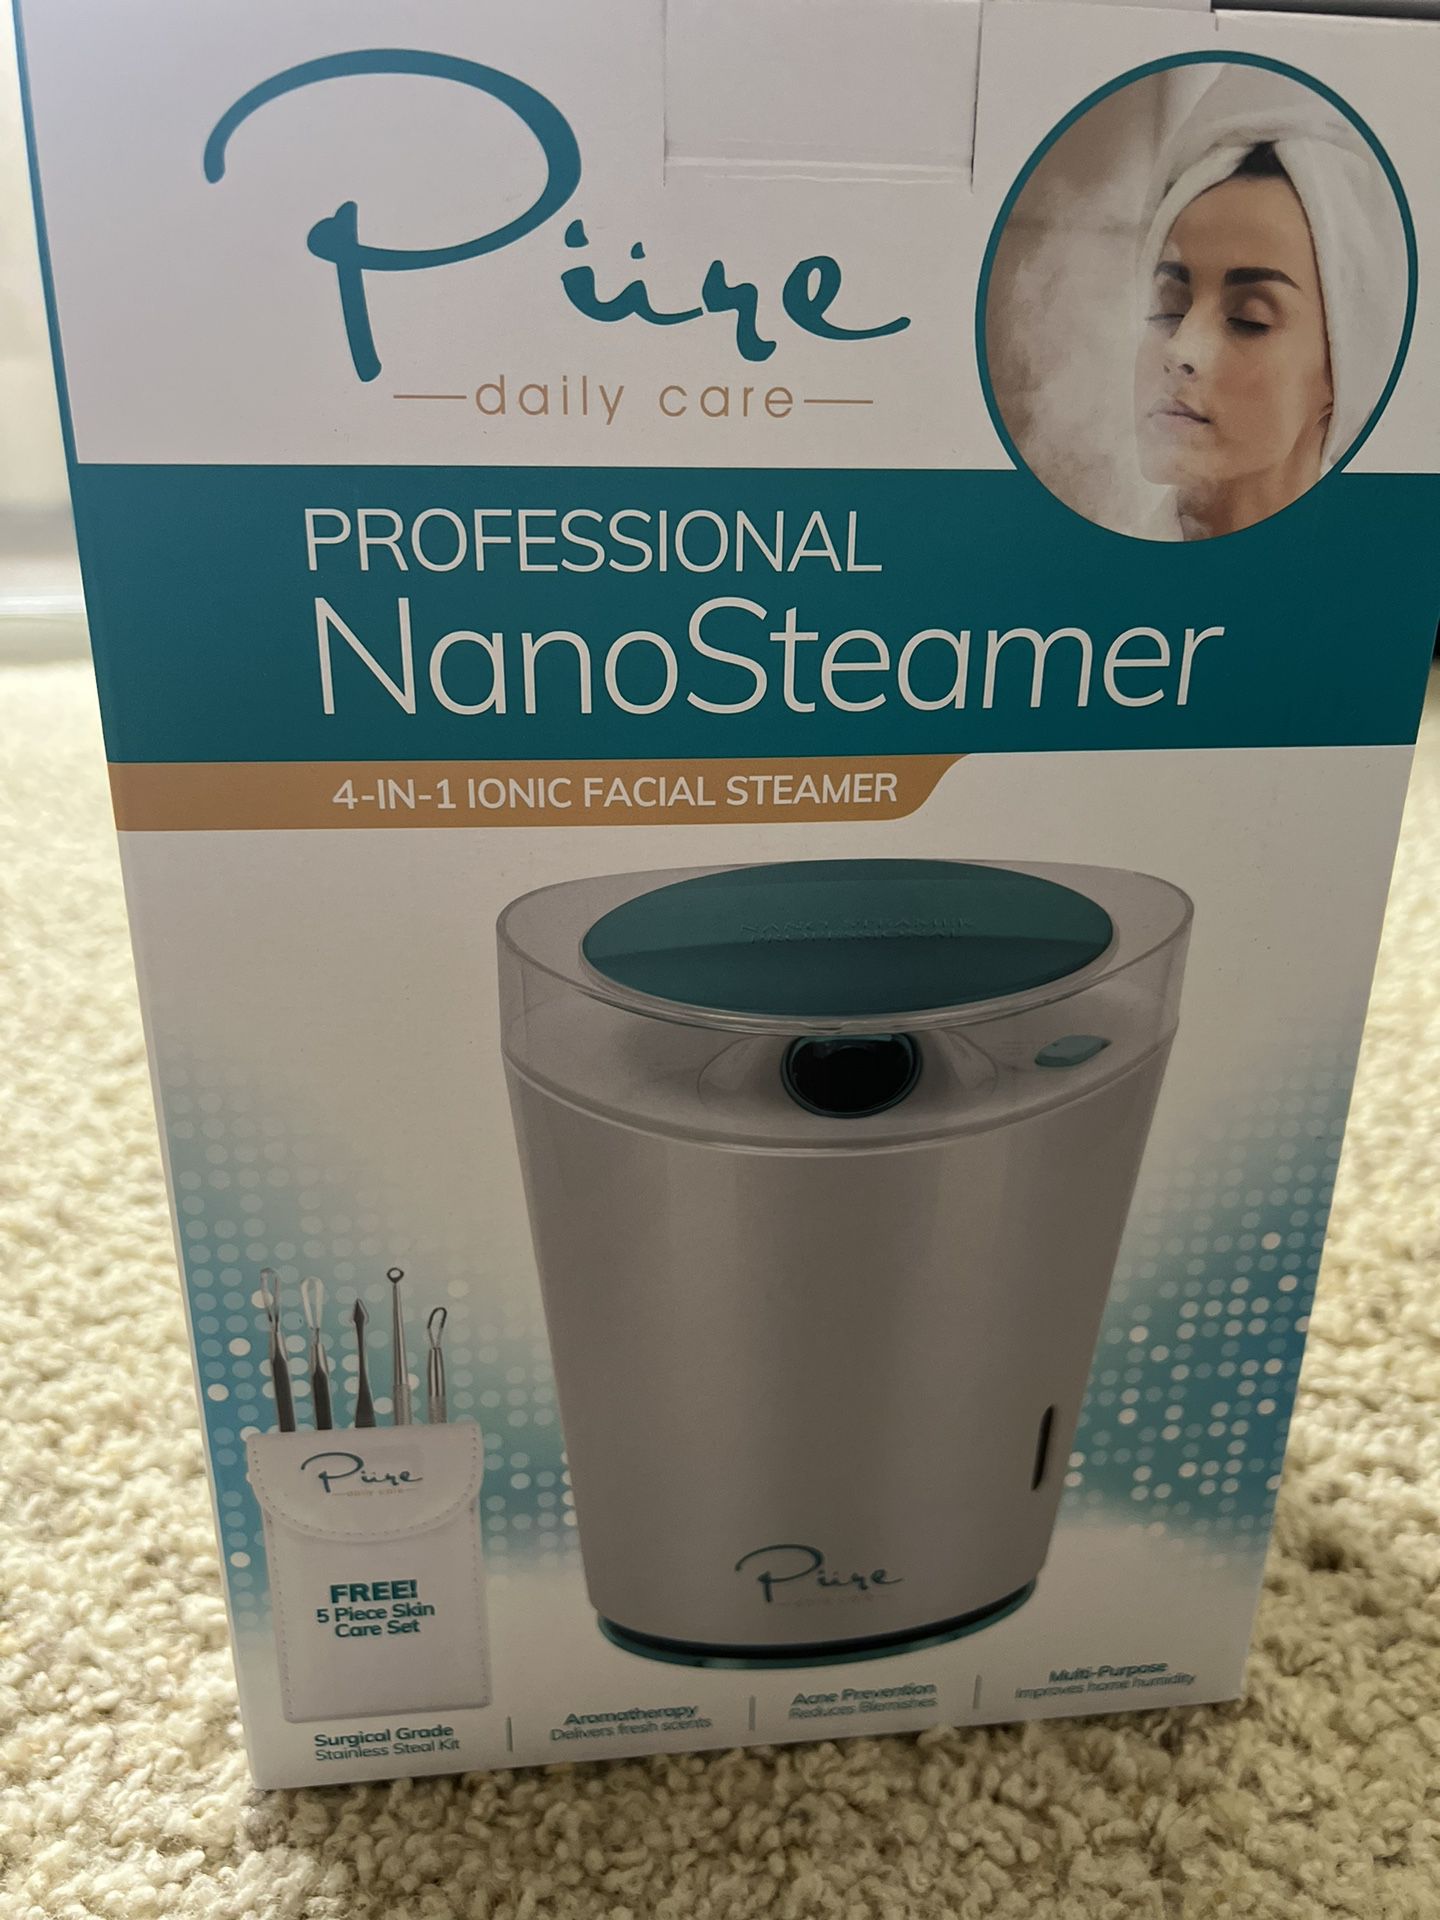 Professional Nano Steamer